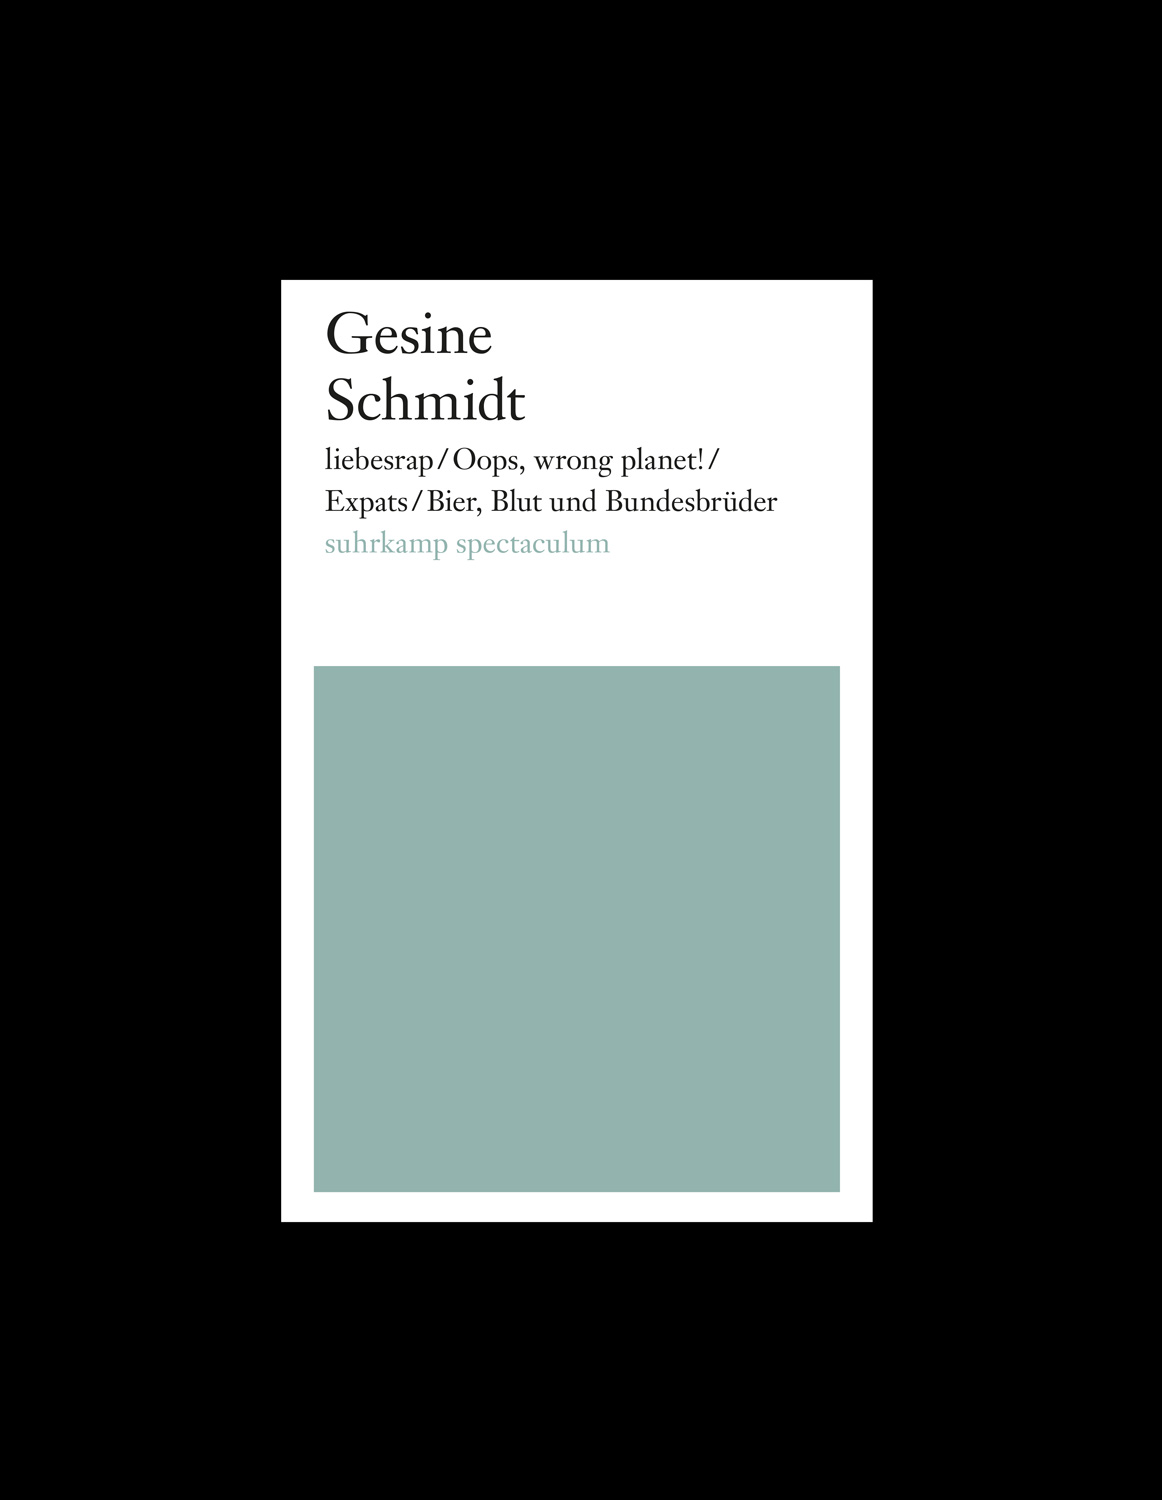 Gesine_Schmidt_suhrkamp_spectaculum_cover_black